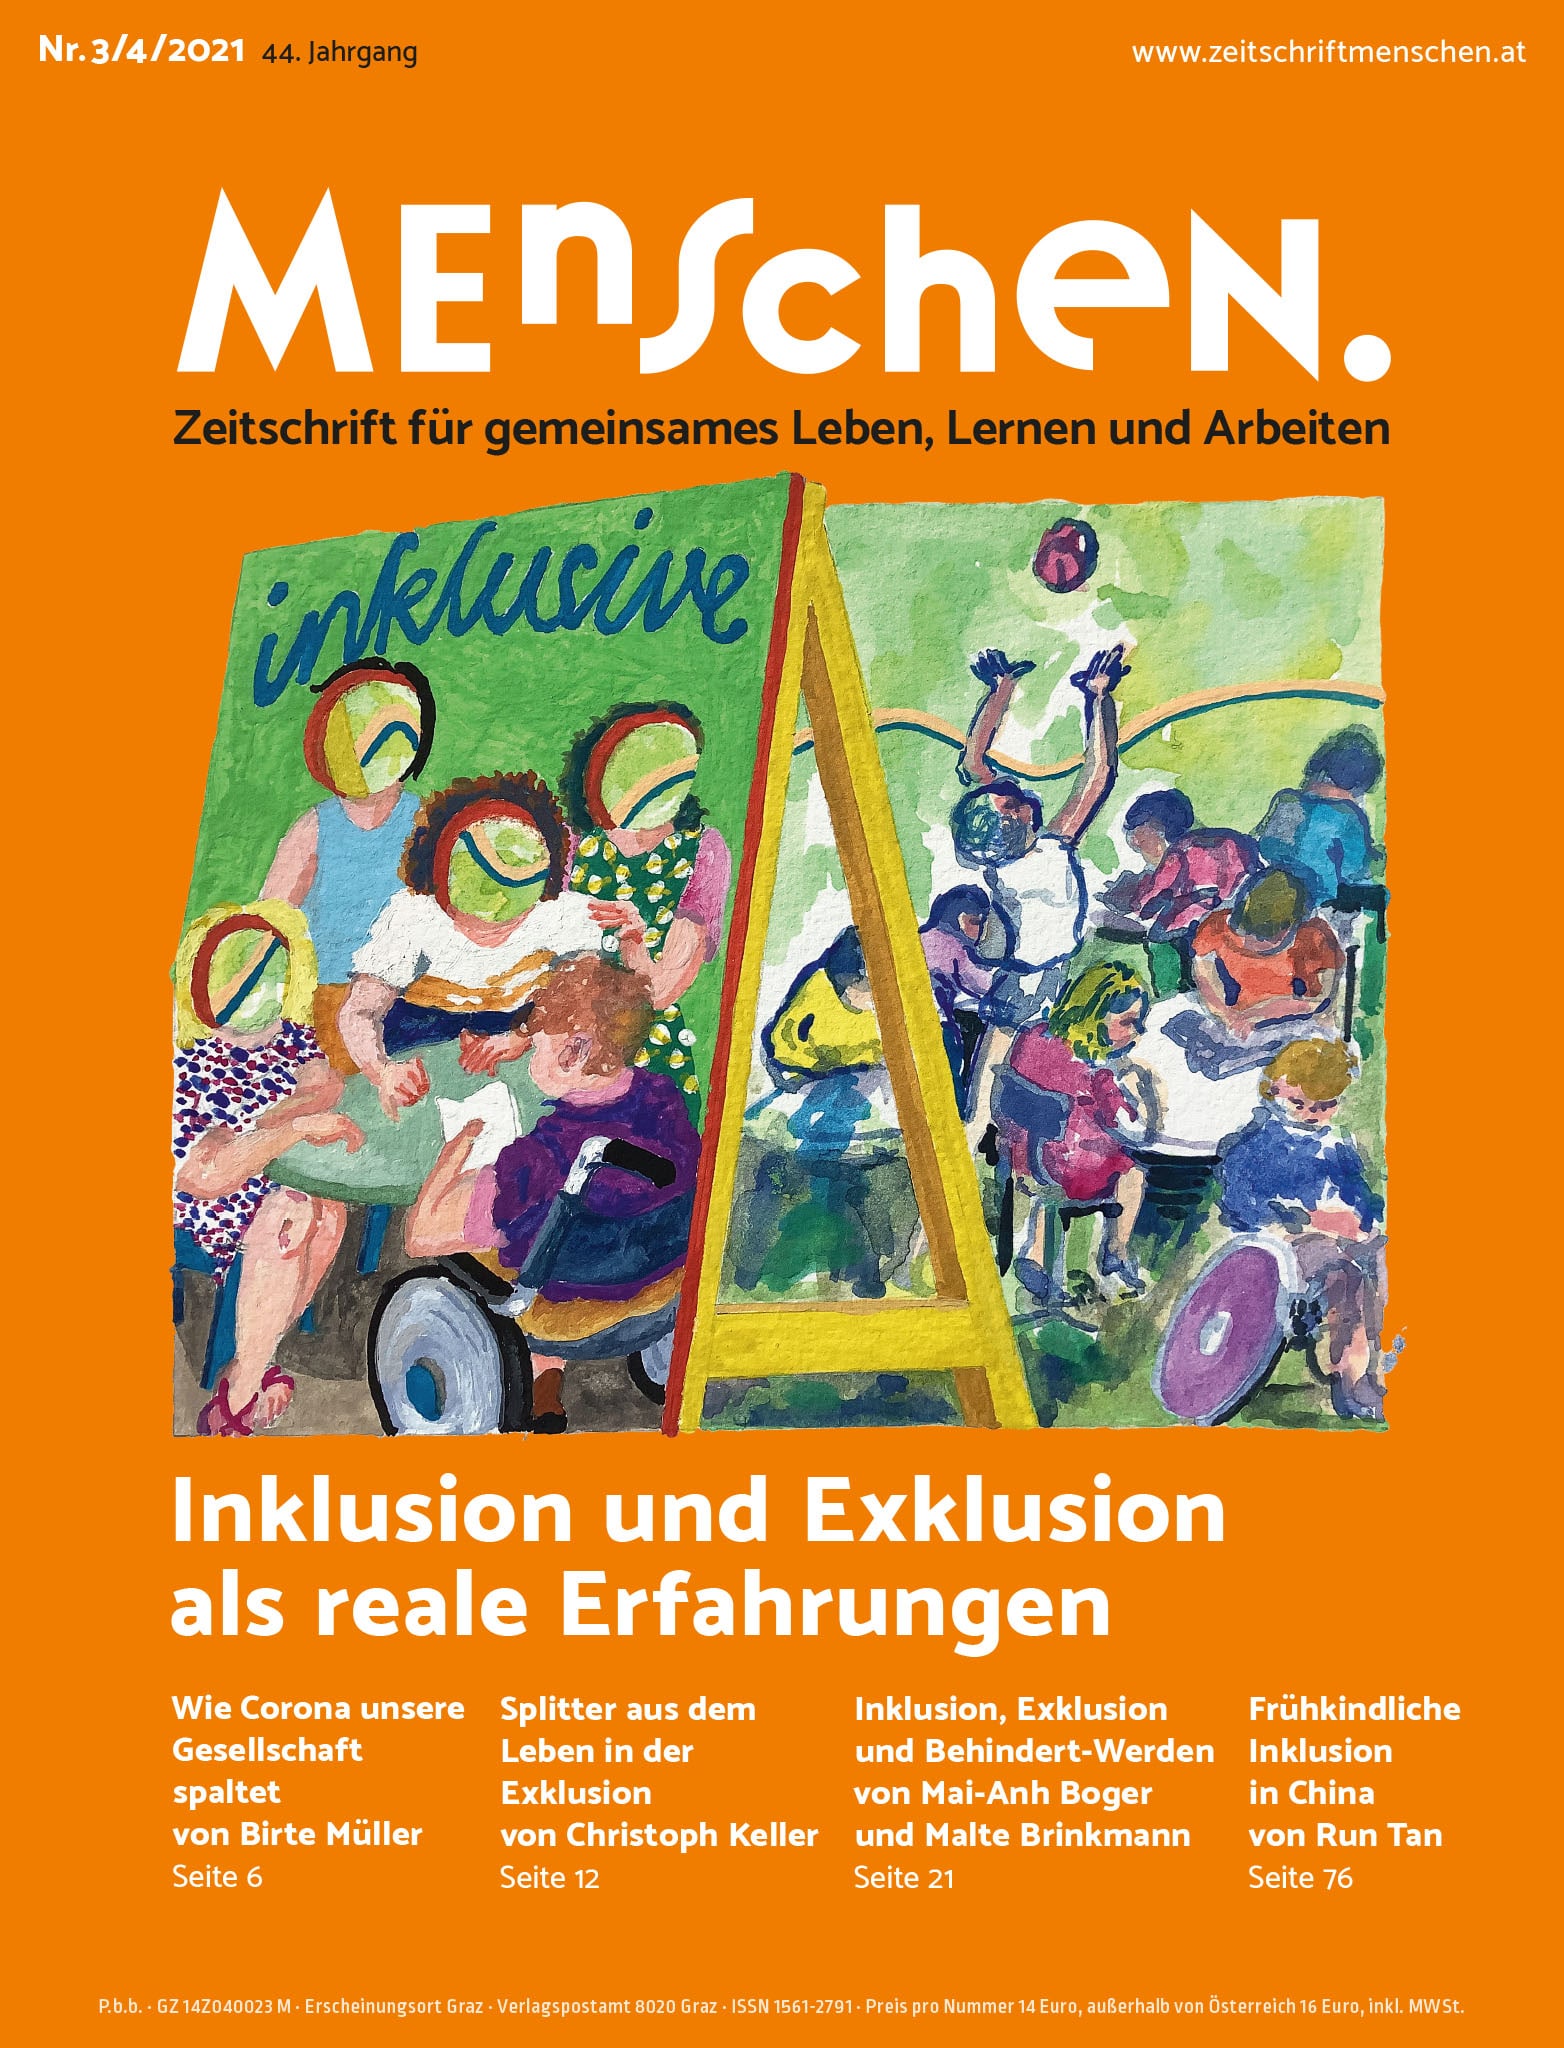 Titelbild der Zeitschrift BEHINDERTE MENSCHEN, Ausgabe 3/4/2021 "Inklusion und Exklusion als reale Erfahrungen"